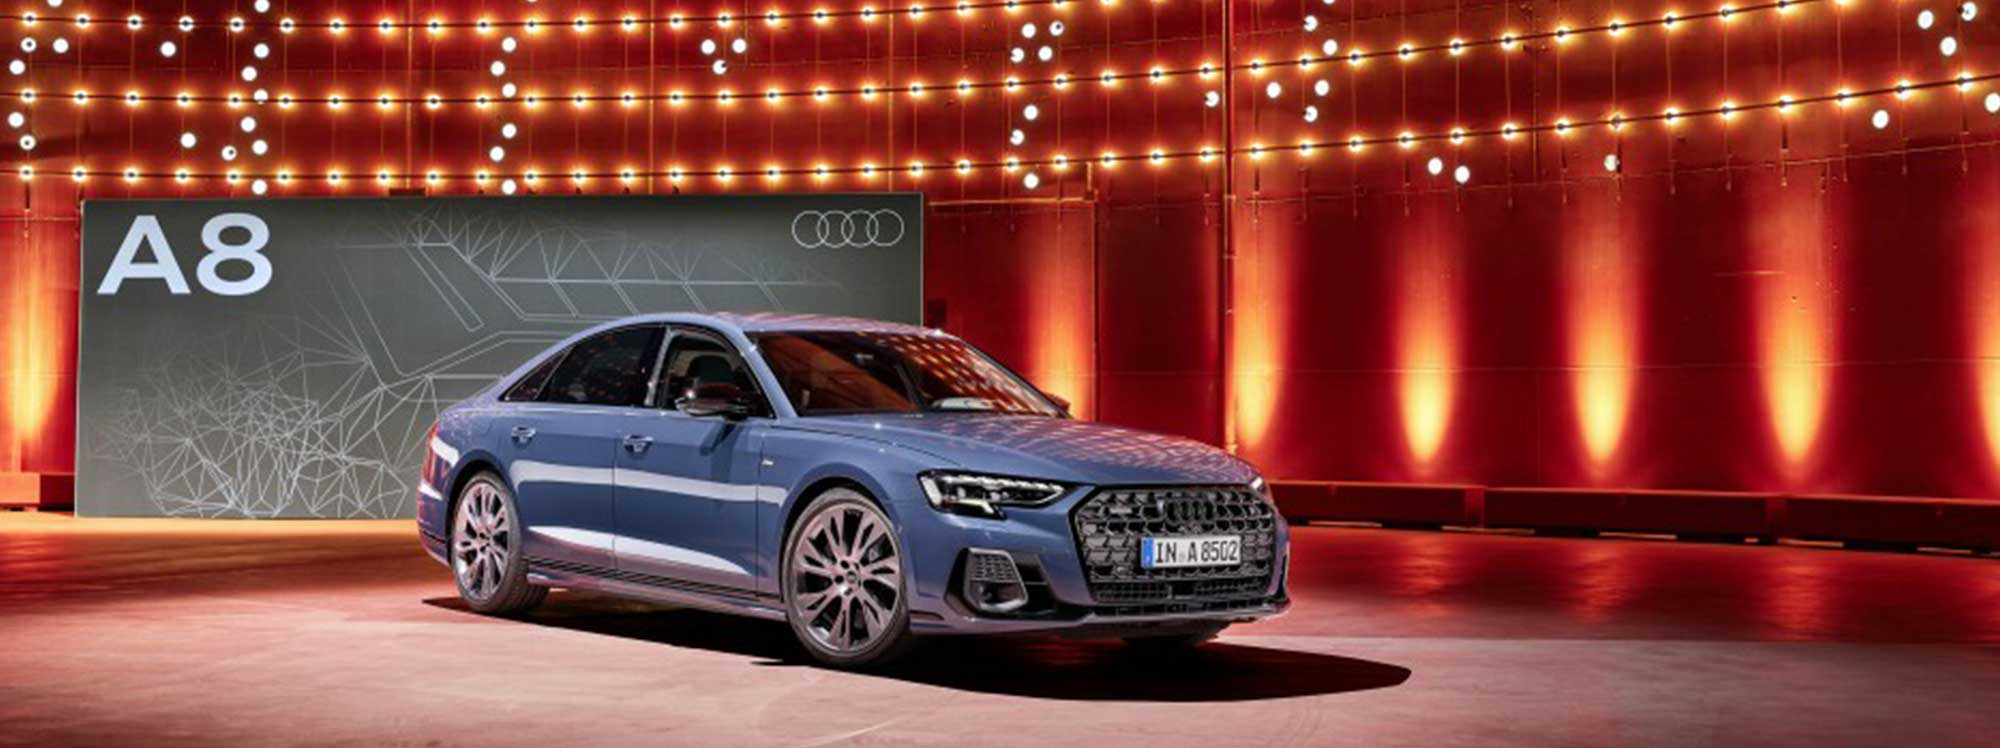 Audi A8: buque insignia de la marca con nuevo diseño y tecnología